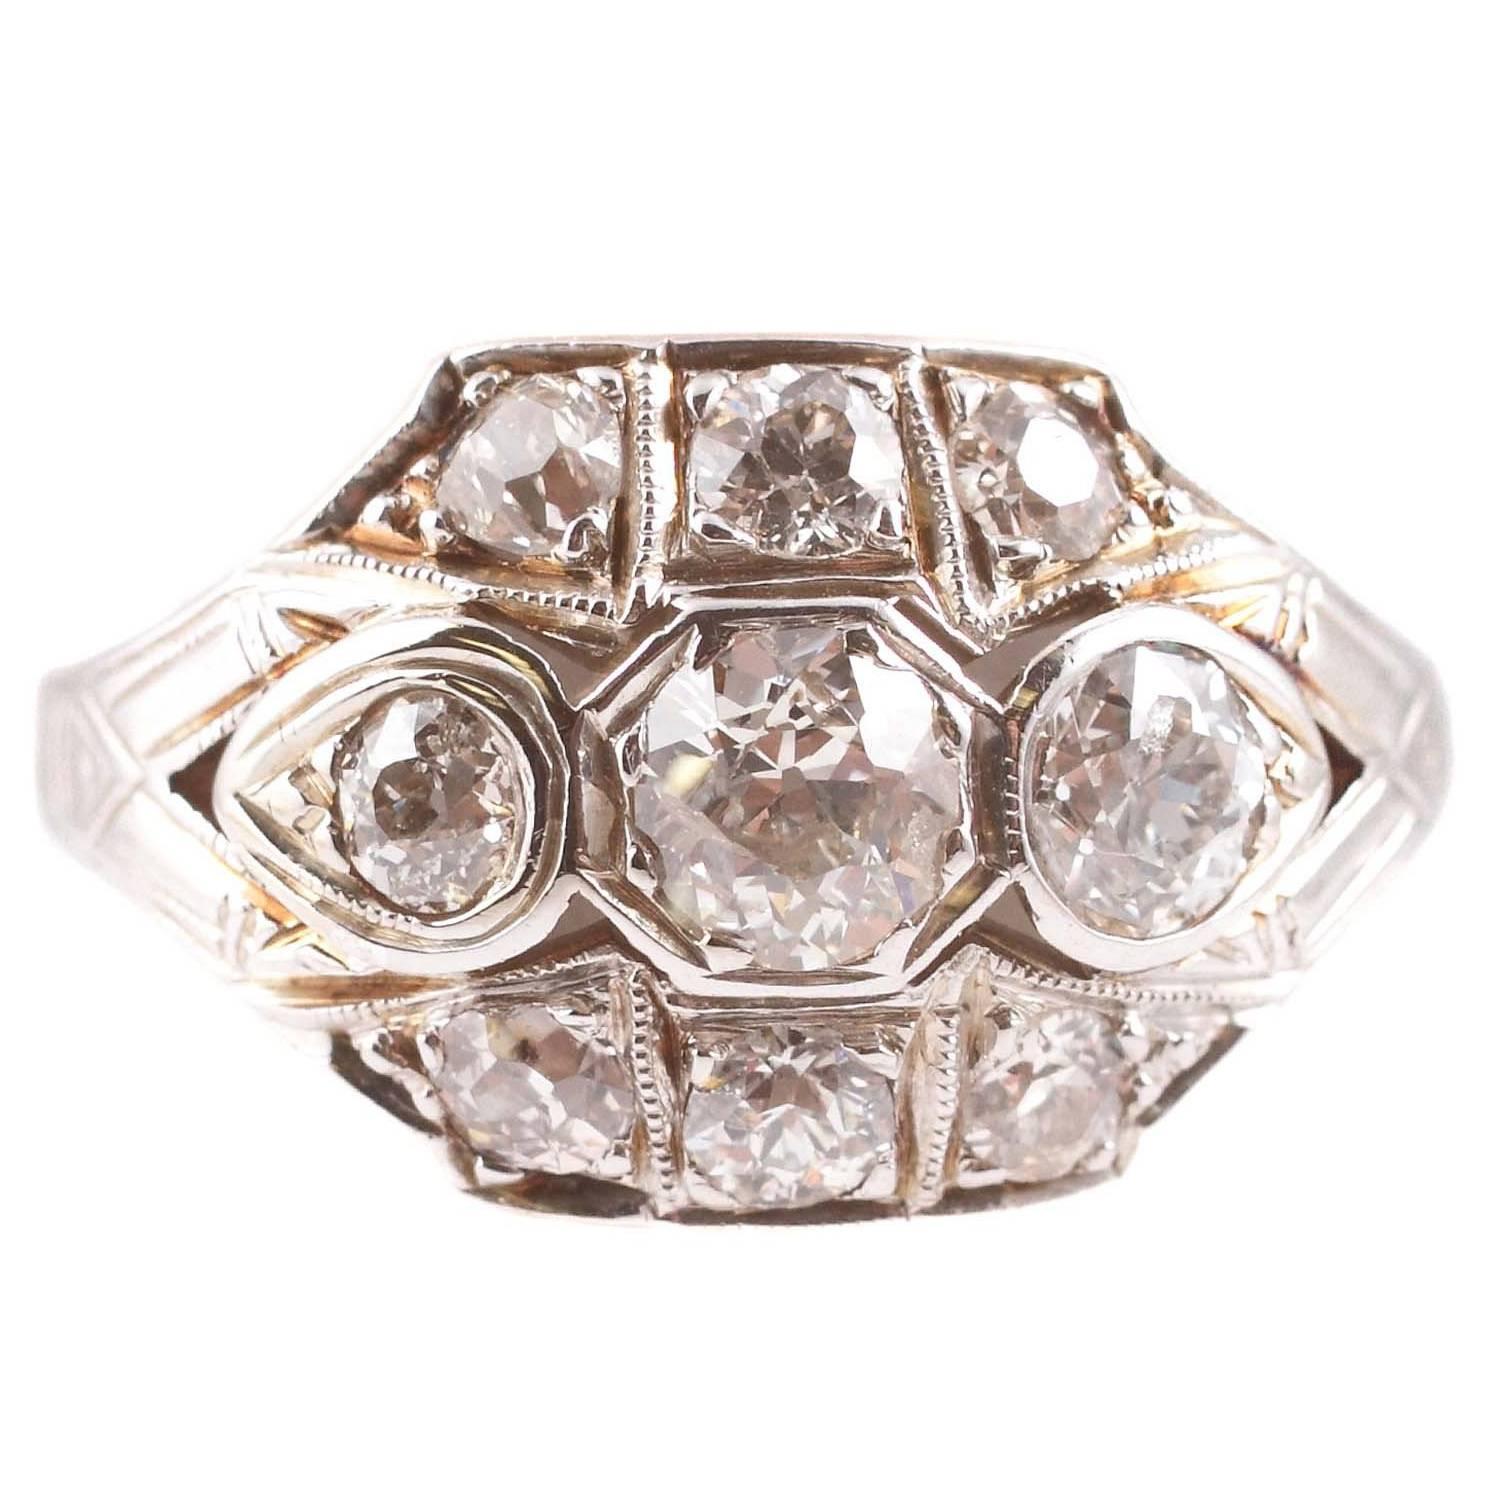 1.20 Carats Old European Cut Diamond Wedding Ring in 14 Karat Gold